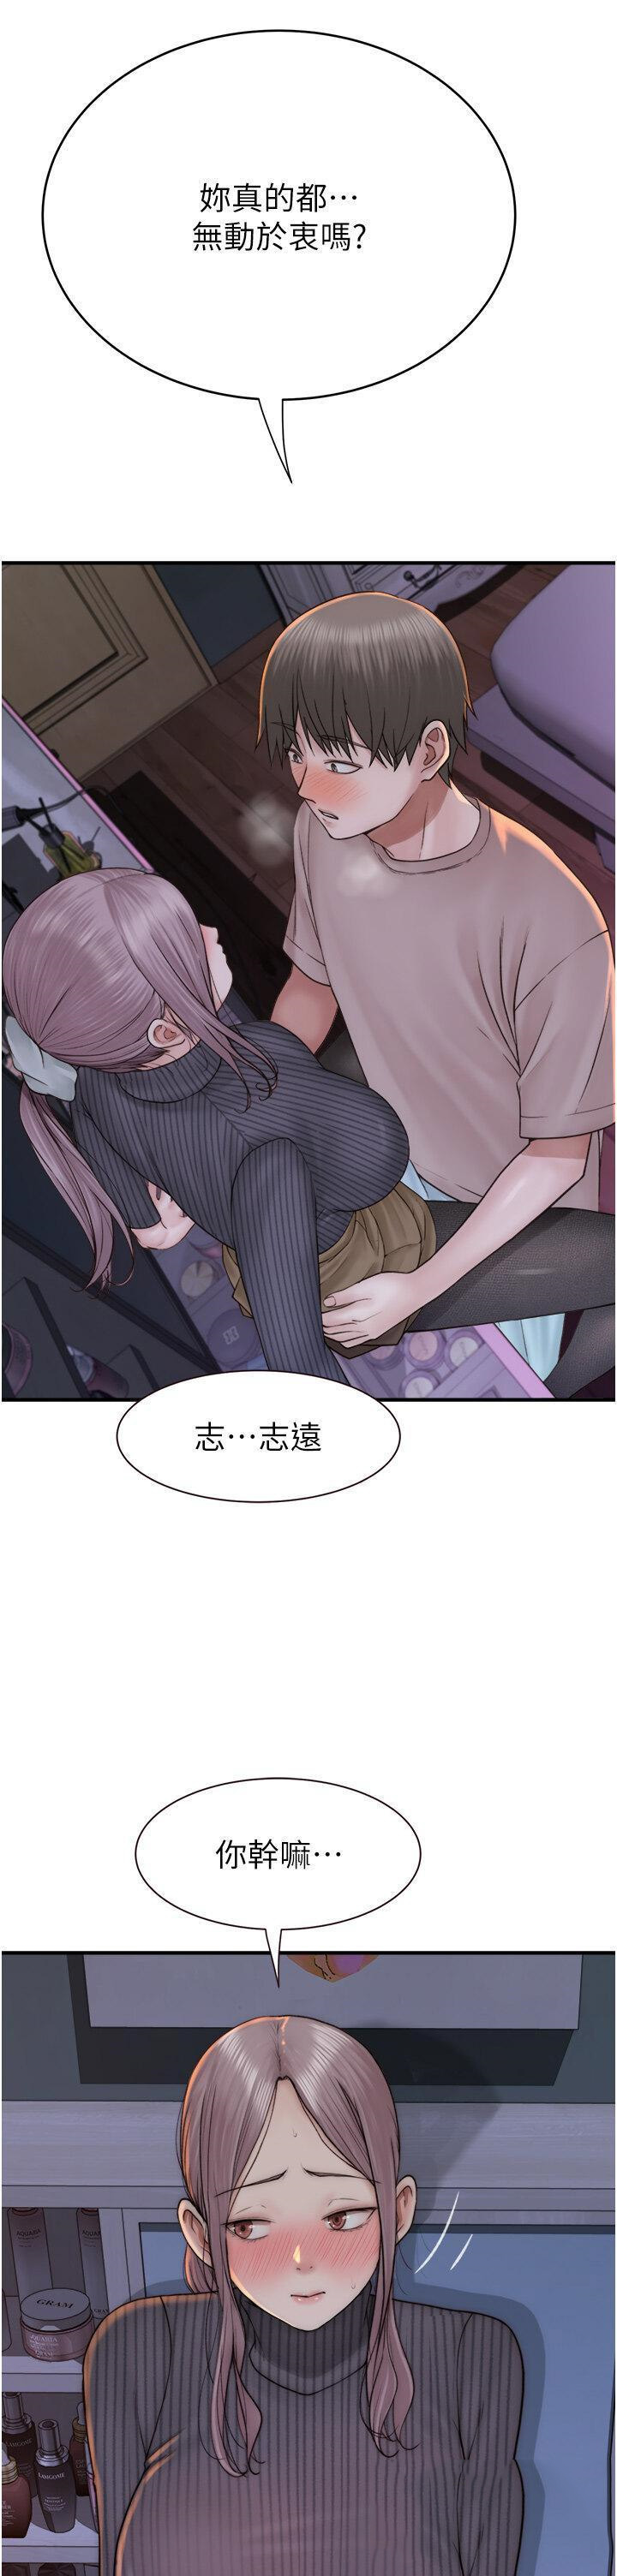 韩国污漫画 繼母的香味 第24话 渐渐变成儿子的形状 8